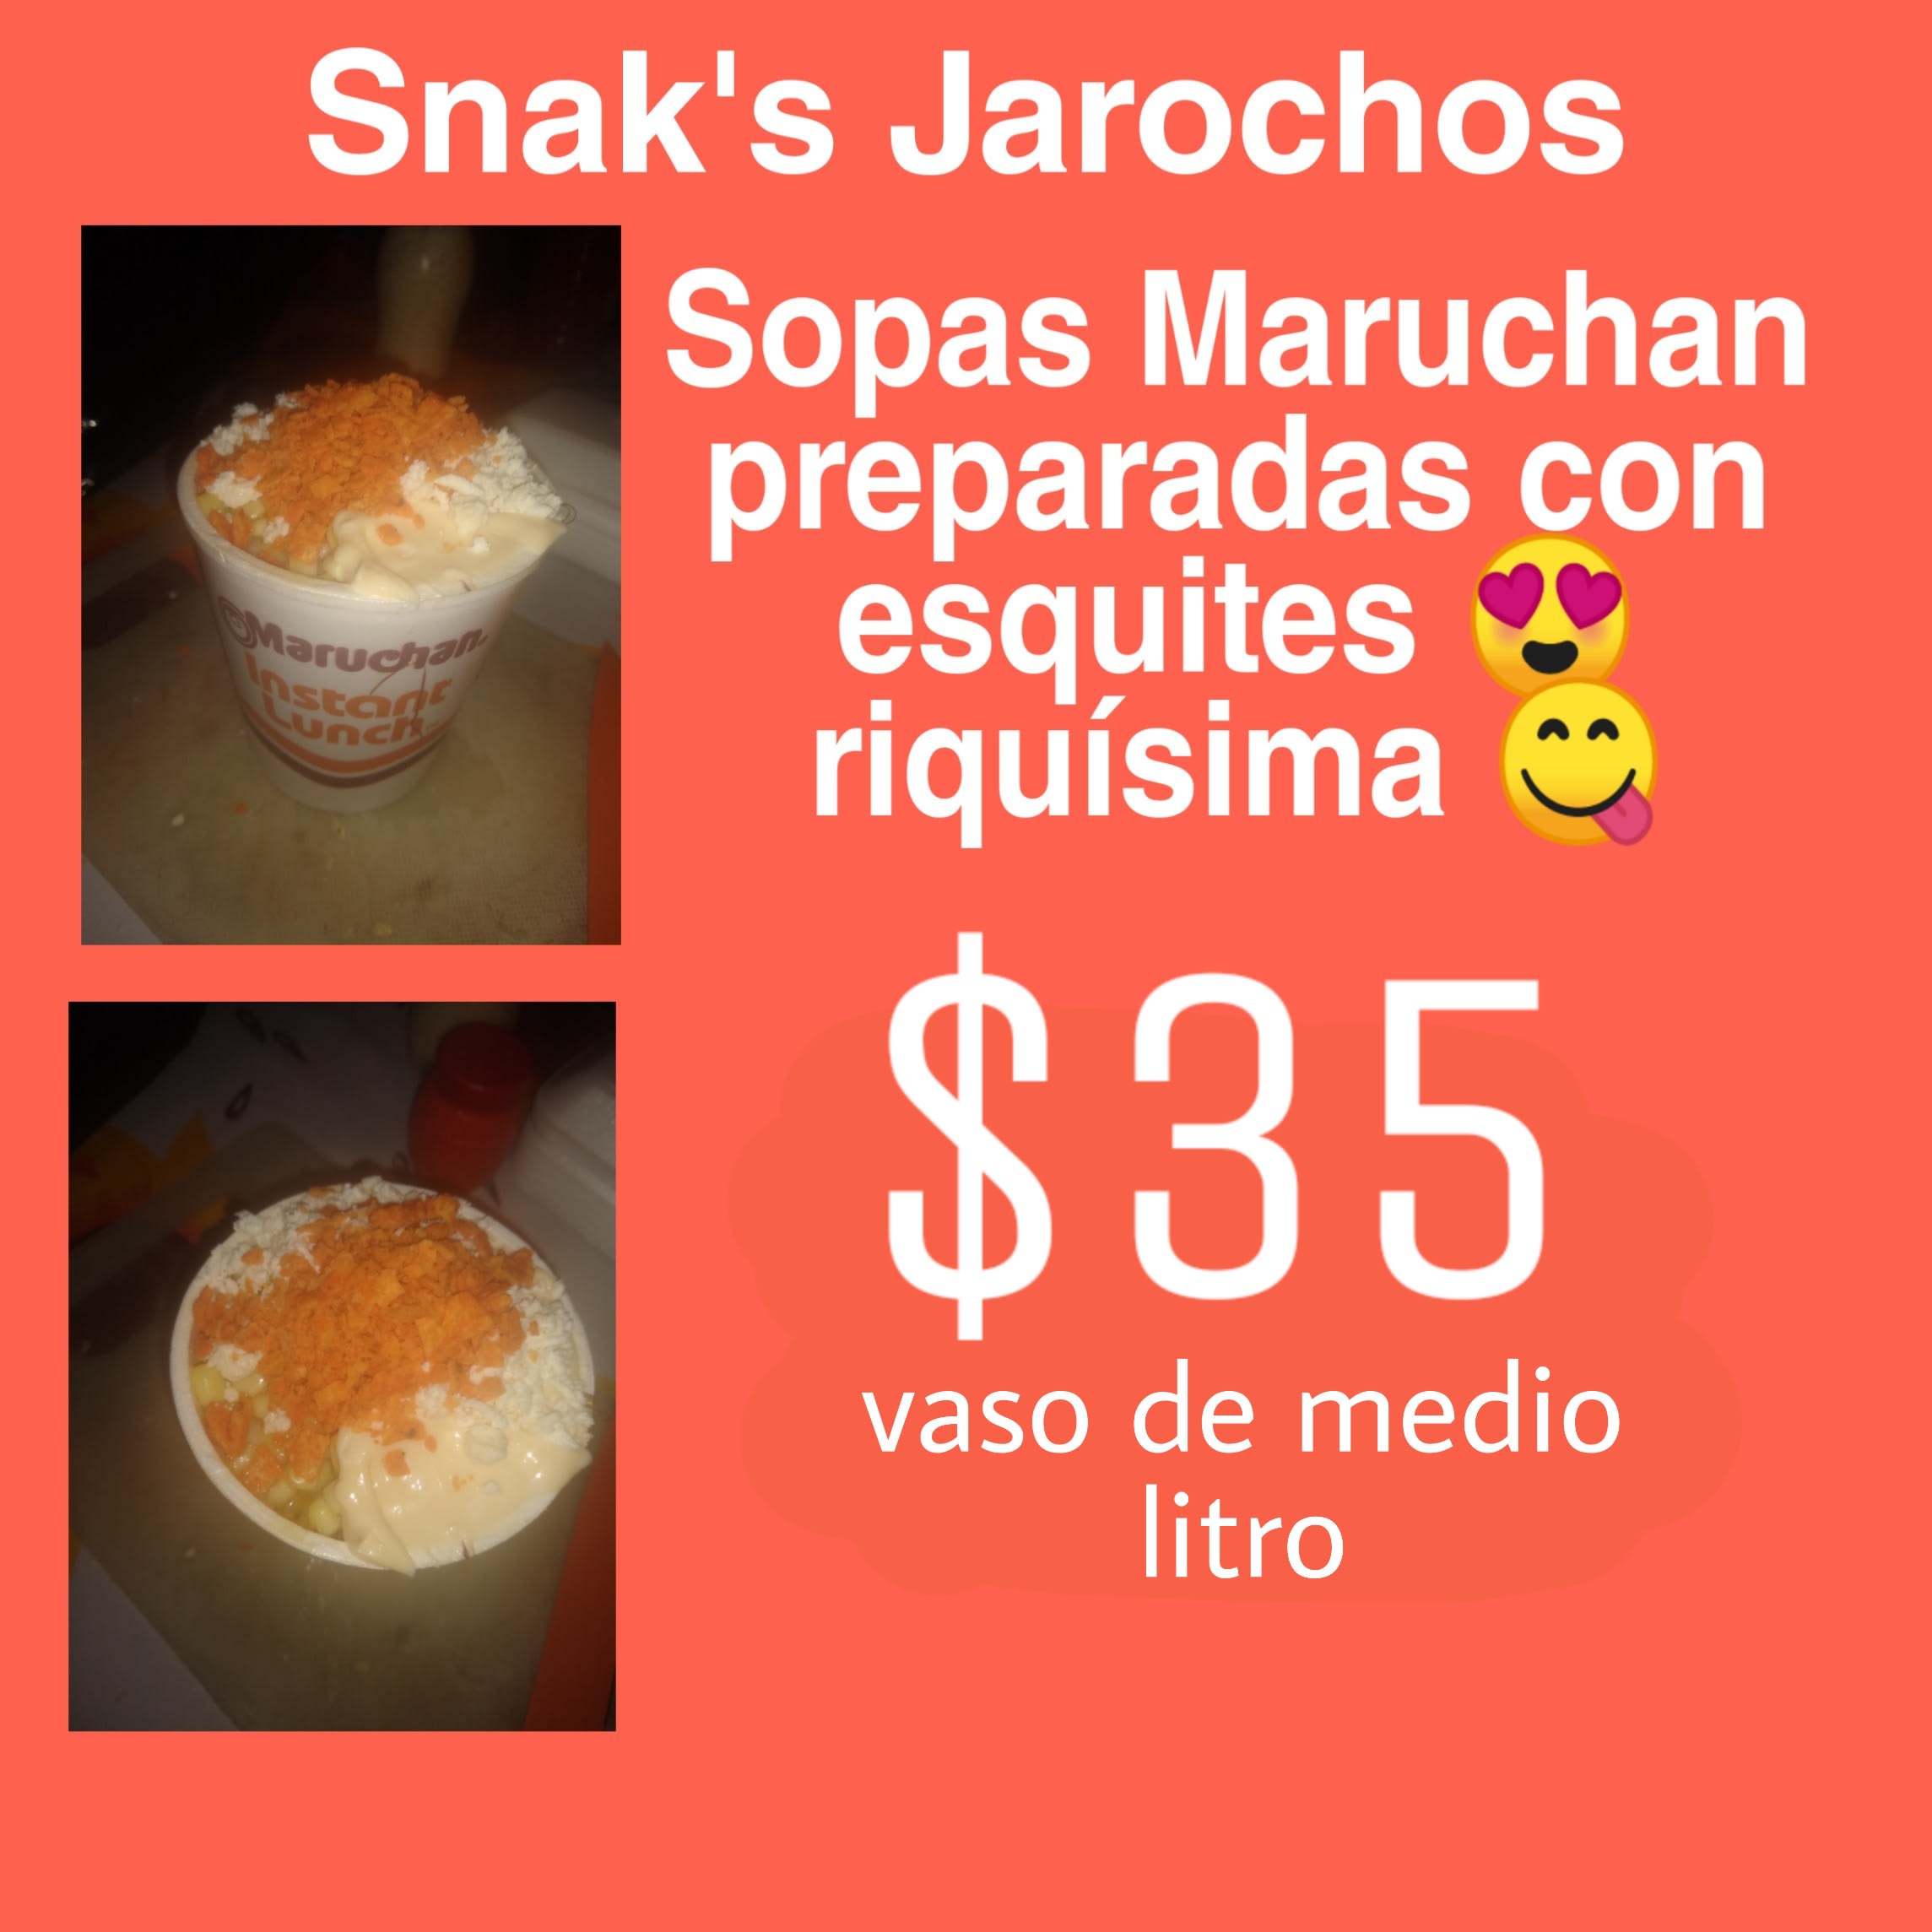 Sopas maruchan preparadas - Comida de antojo - Snak's Jarochos - Snack-bar  | Lerma